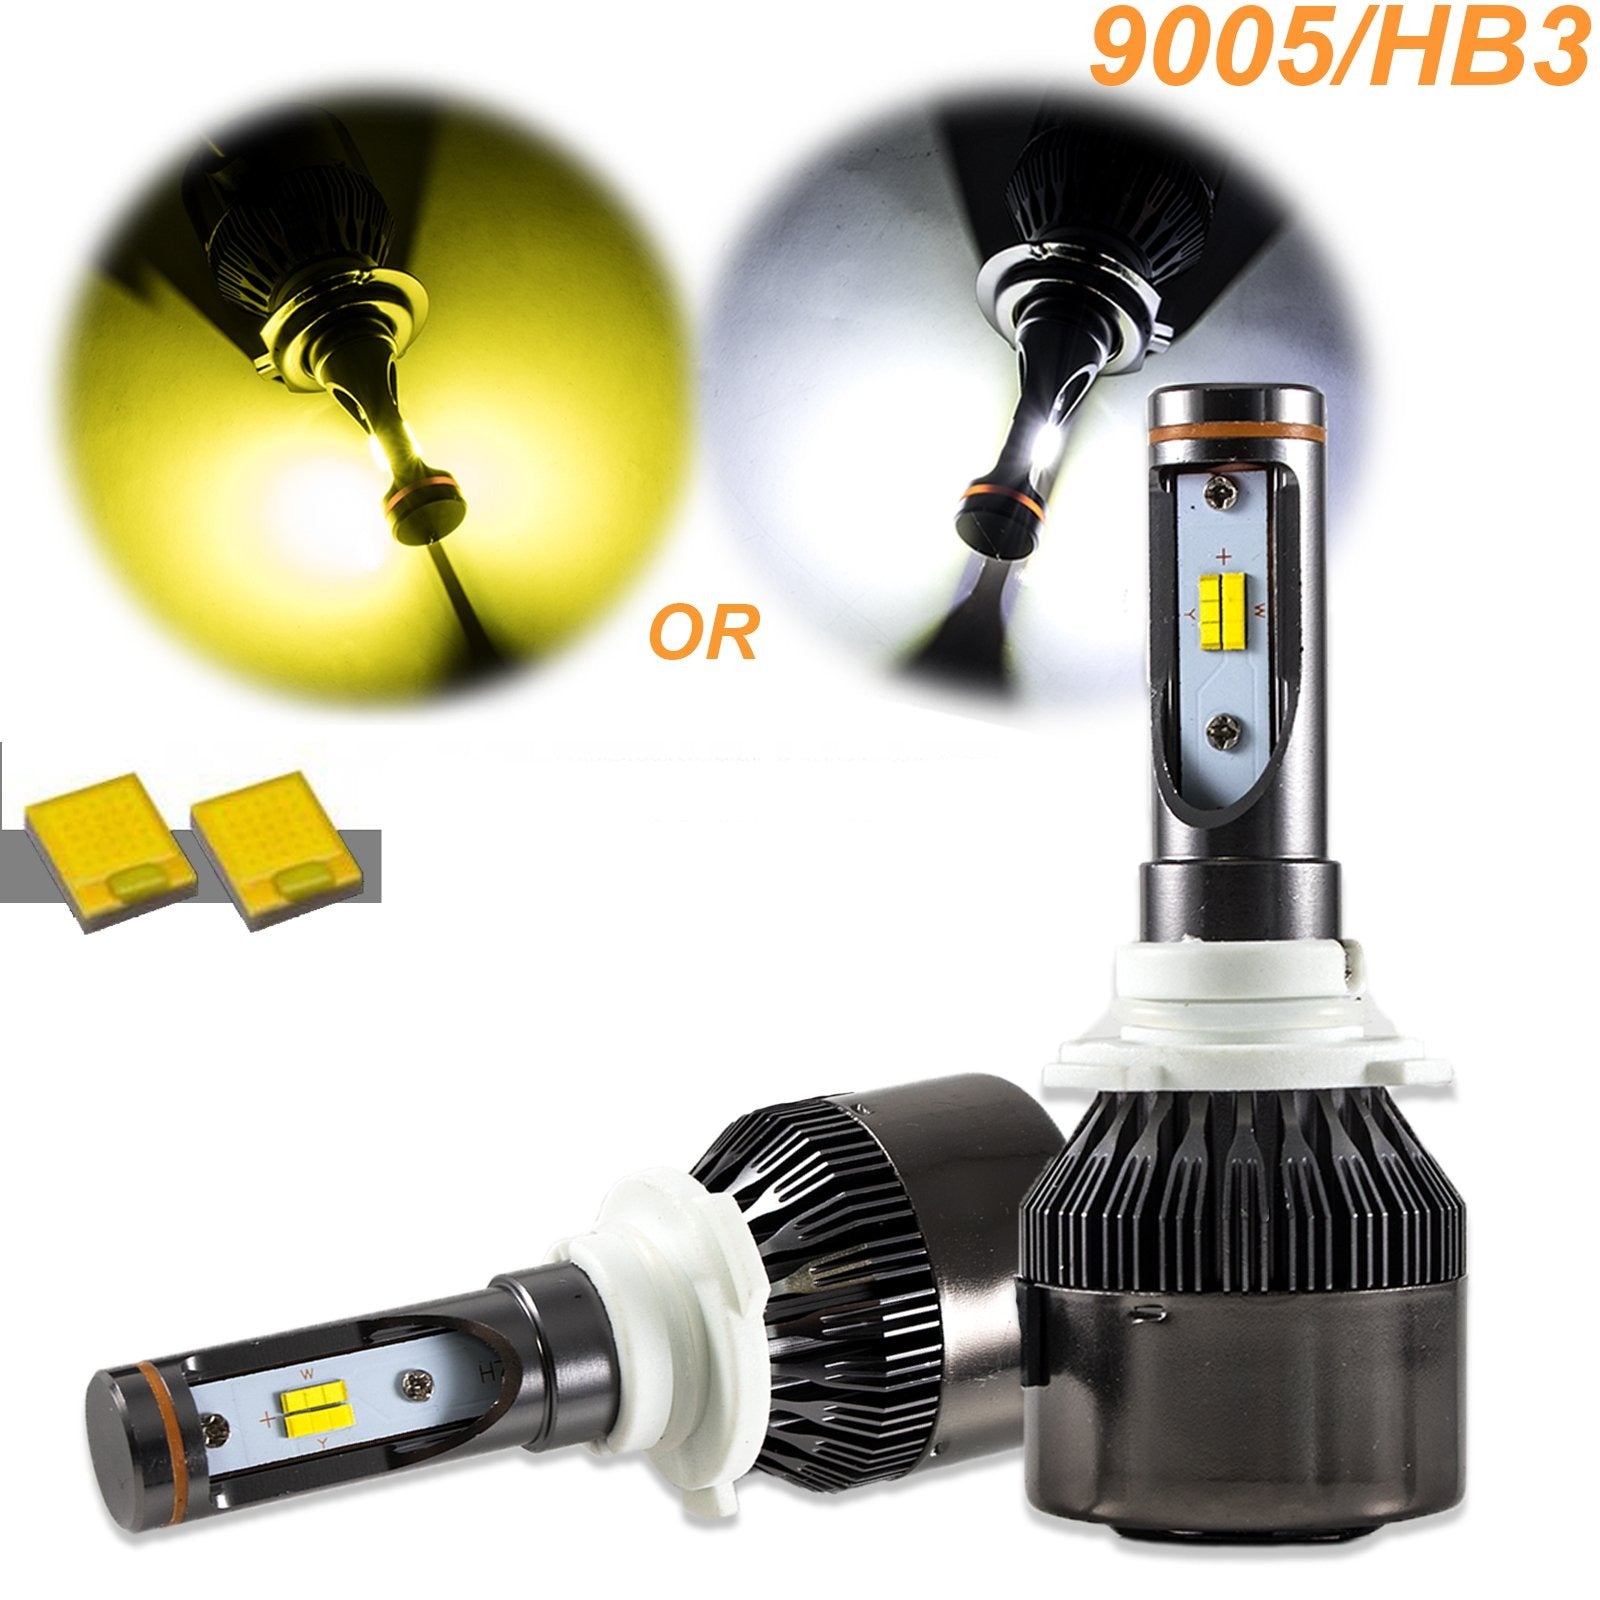 9005 (HB3) G3 LED Bulbs Twin Pack